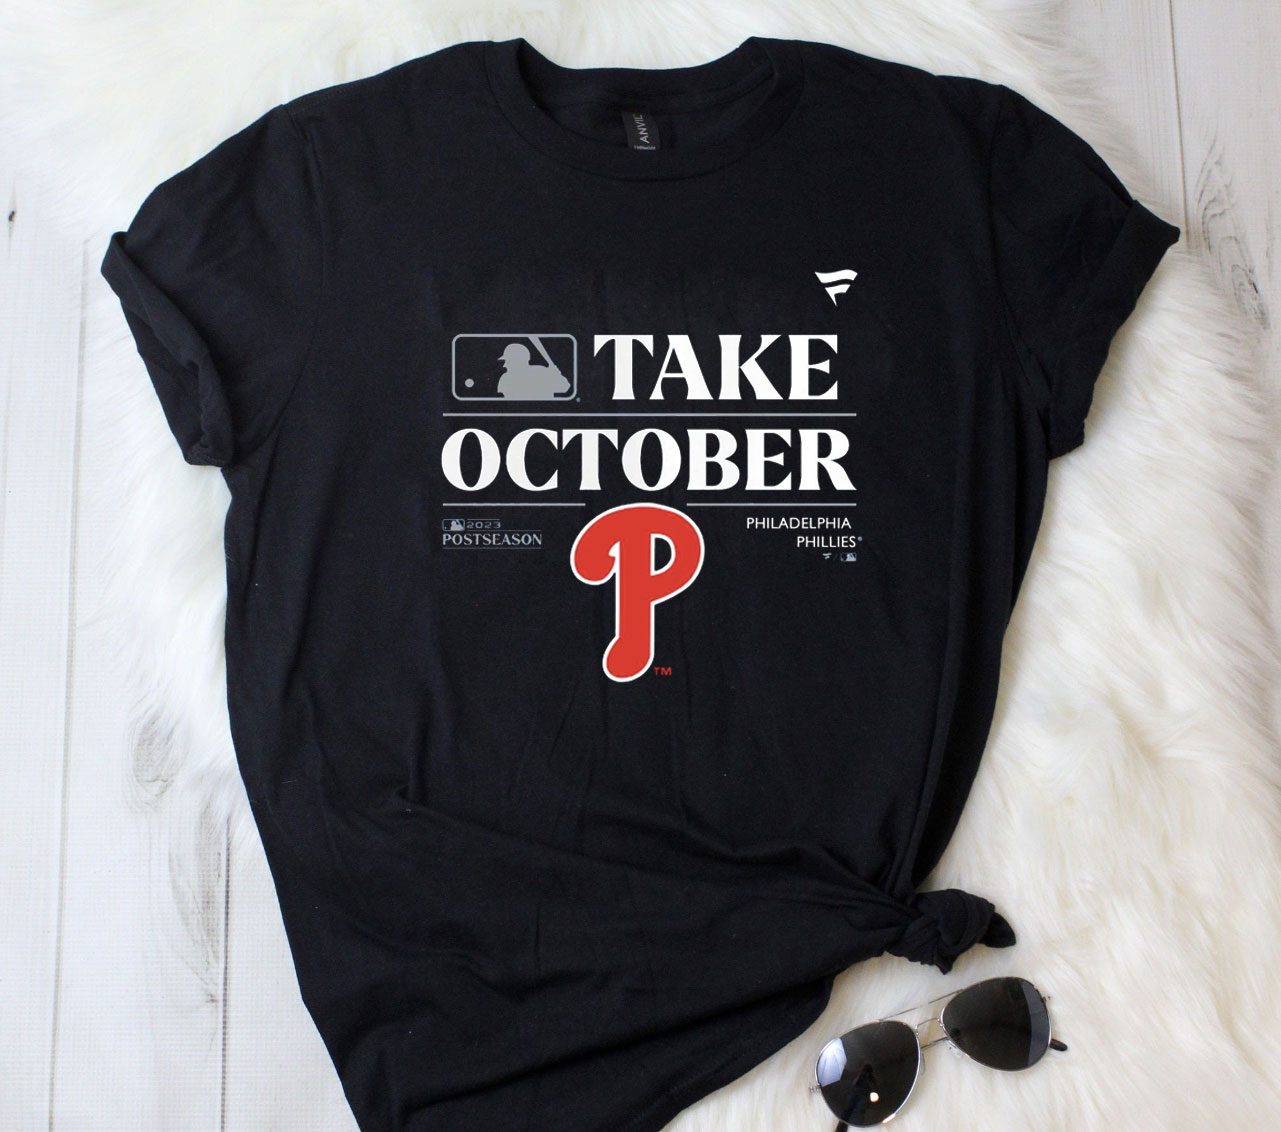 phillies take october shirt